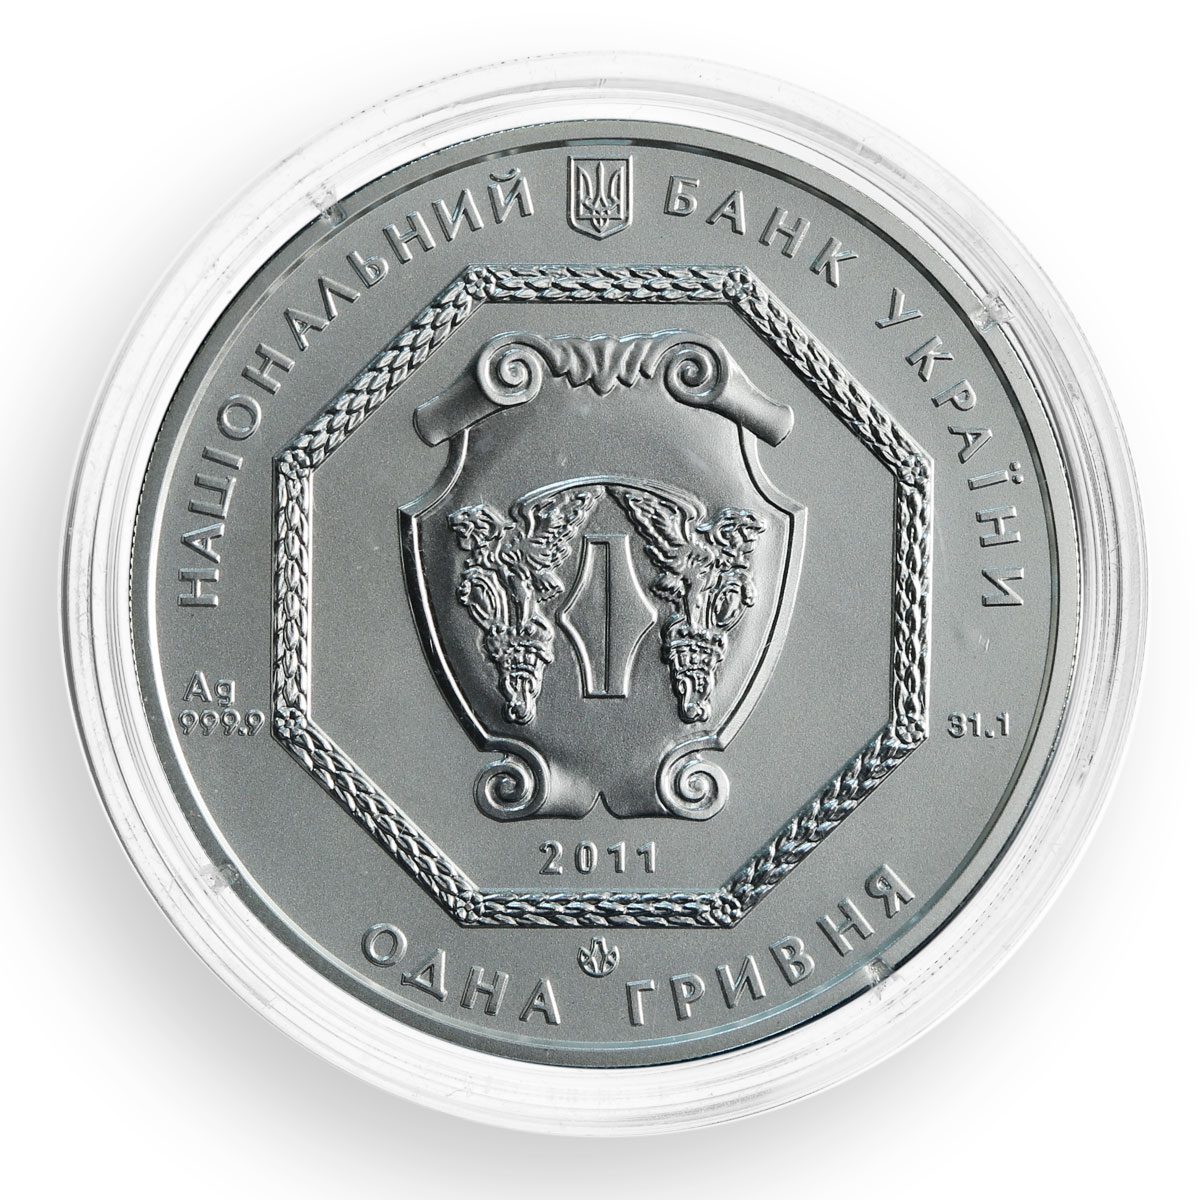 Ukraine 1 hryvnia, Archangel Michael, silver coin, 2011